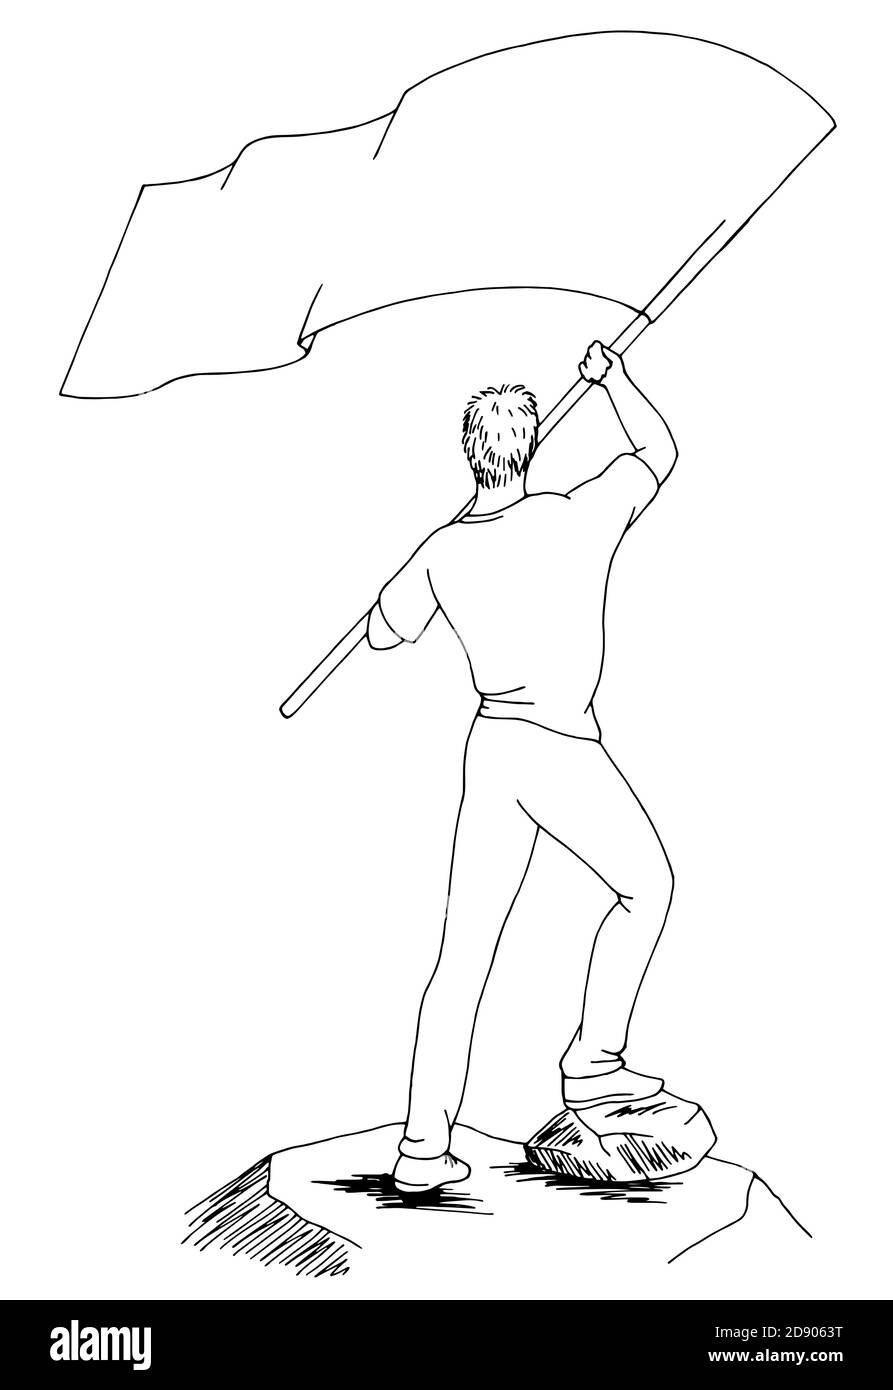 Uomo che sventolava una bandiera in alto isolato grafico nero vettore di illustrazione dello schizzo bianco Illustrazione Vettoriale